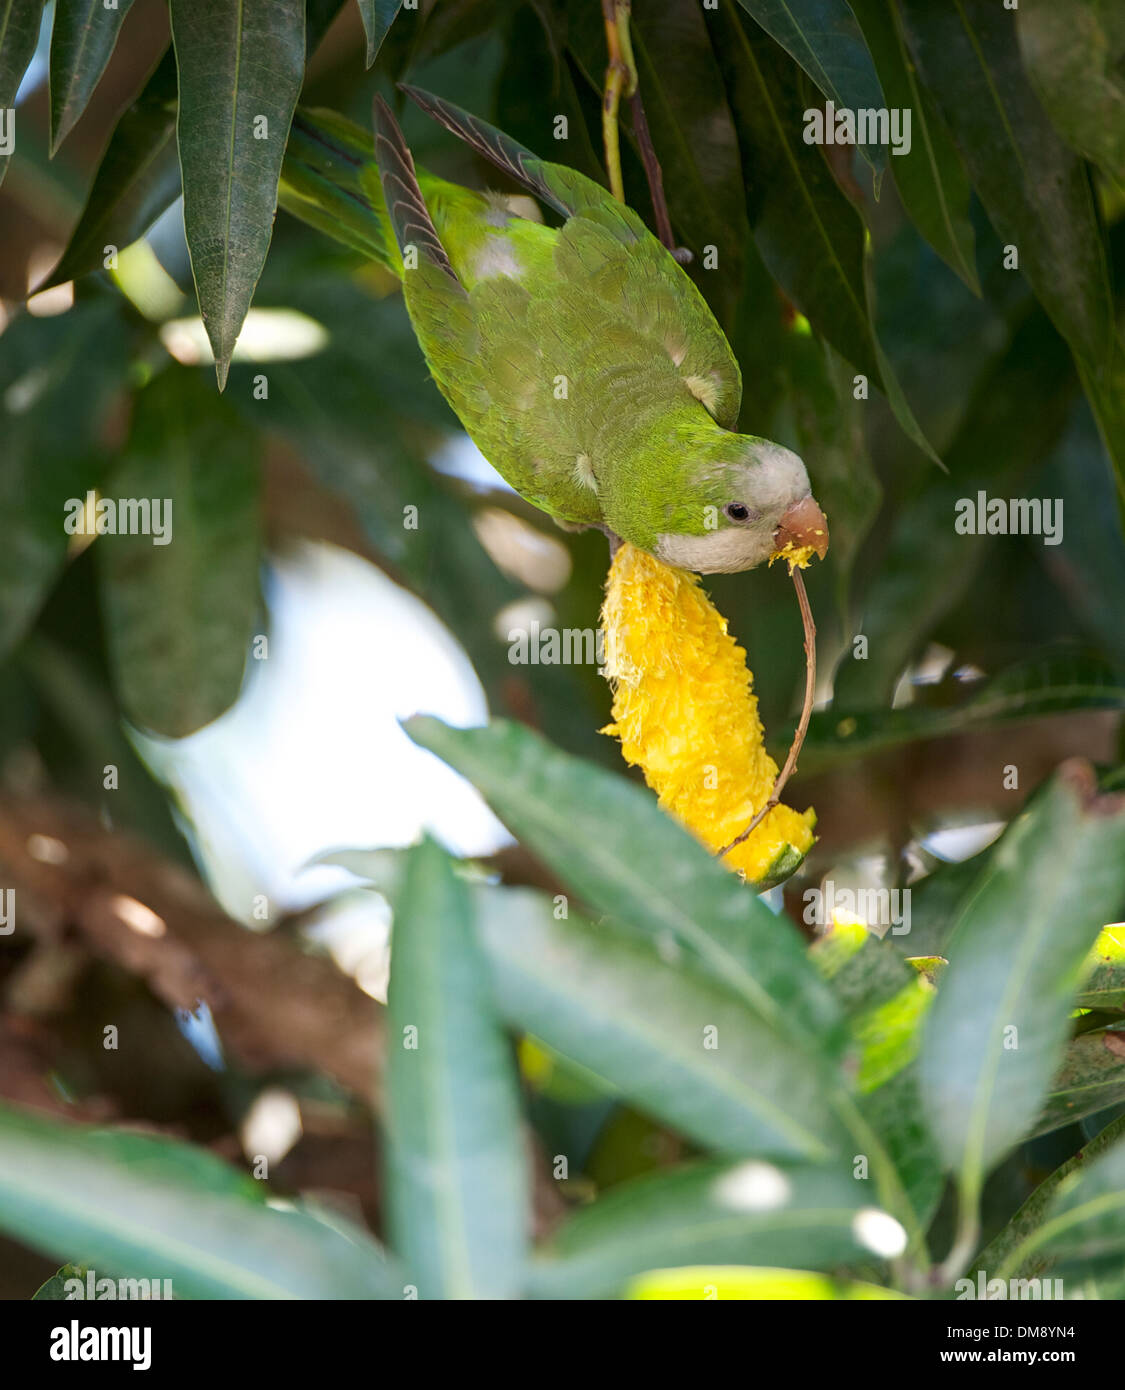 Monk Parakeet (Myiopsitta monachus) feeding on Mango, The Pantanal, Mato Grosso, Brazil Stock Photo